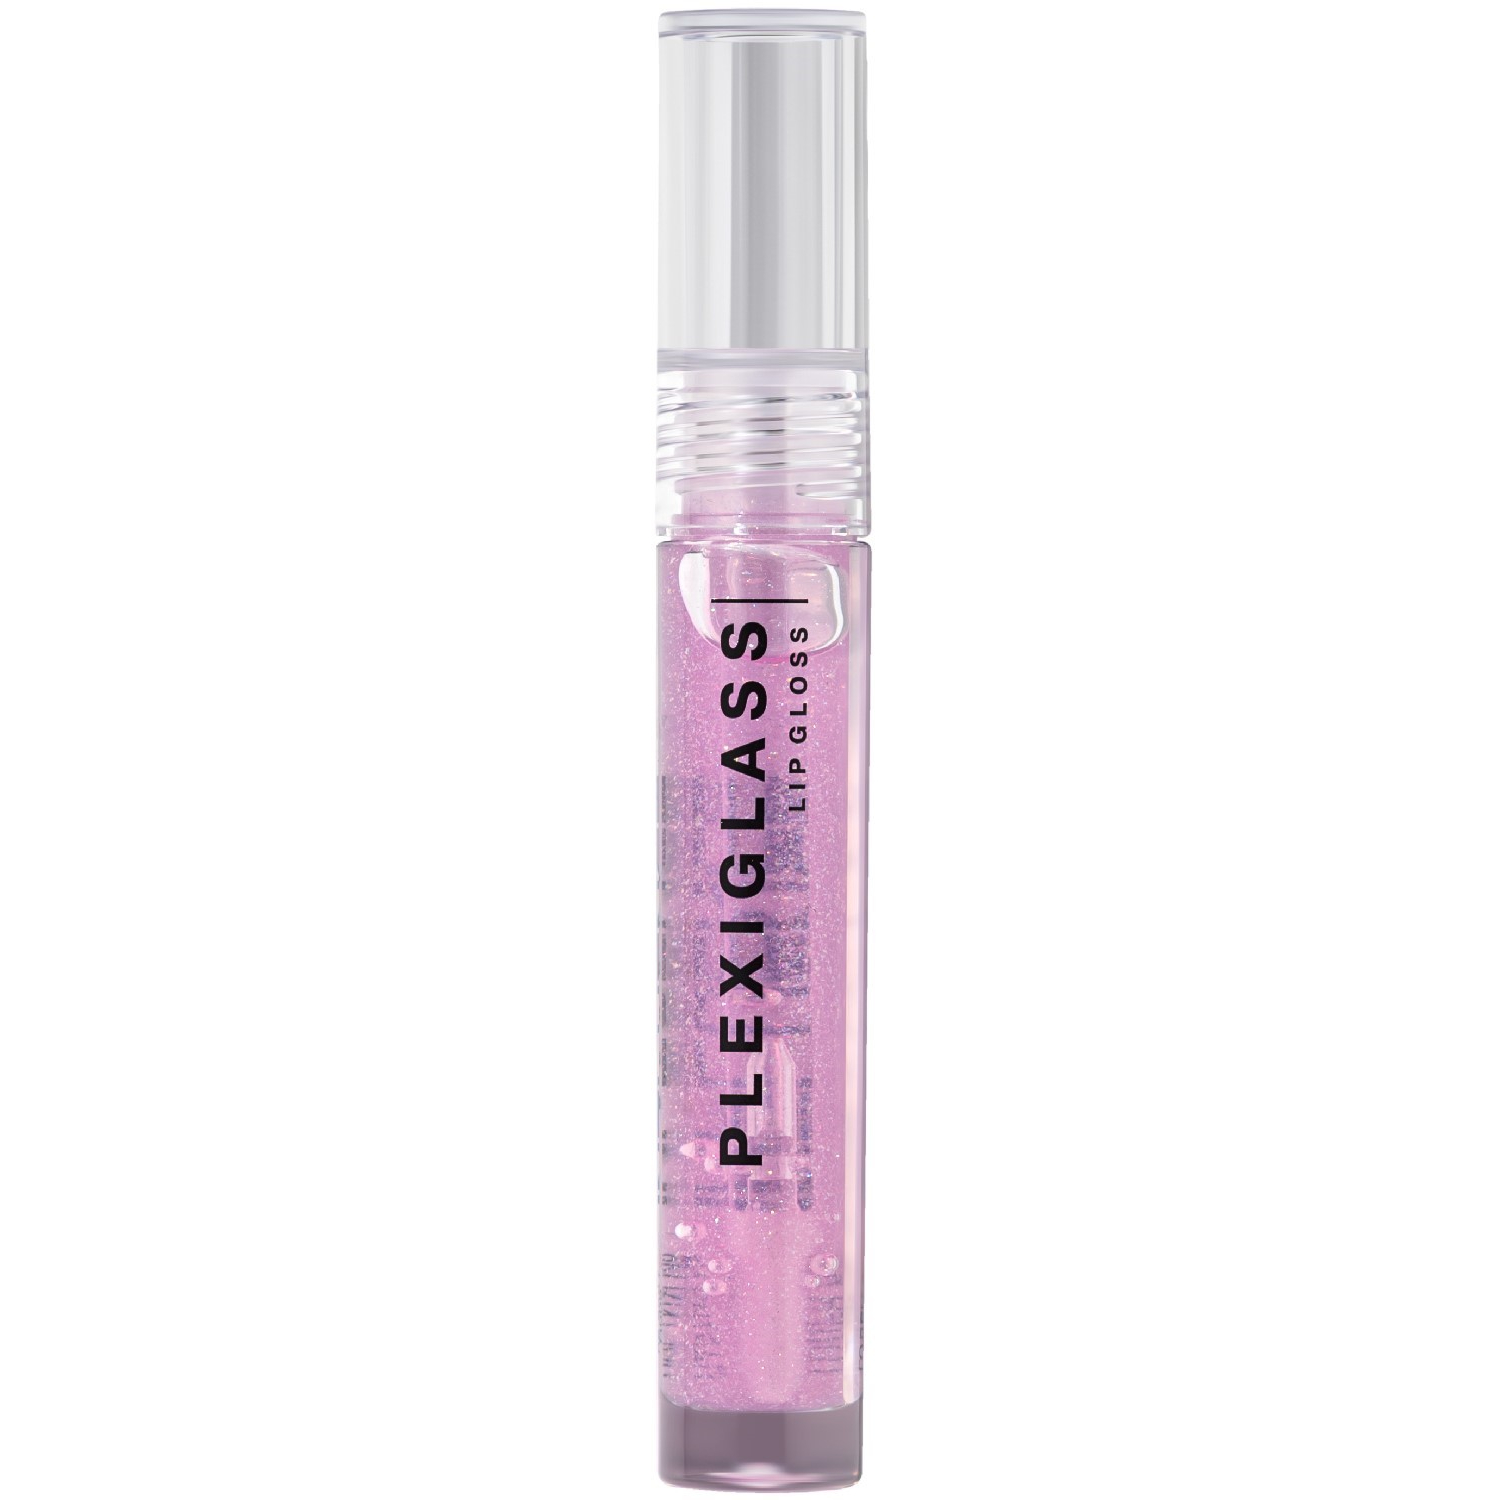 Блеск для губ INFLUENCE BEAUTY PLEXIGLASS глянцевый, с эффектом жидкого стекла, тон 04: полупрозрачный розовый с маленькими сияющими частичками, 3,5мл - фото 1